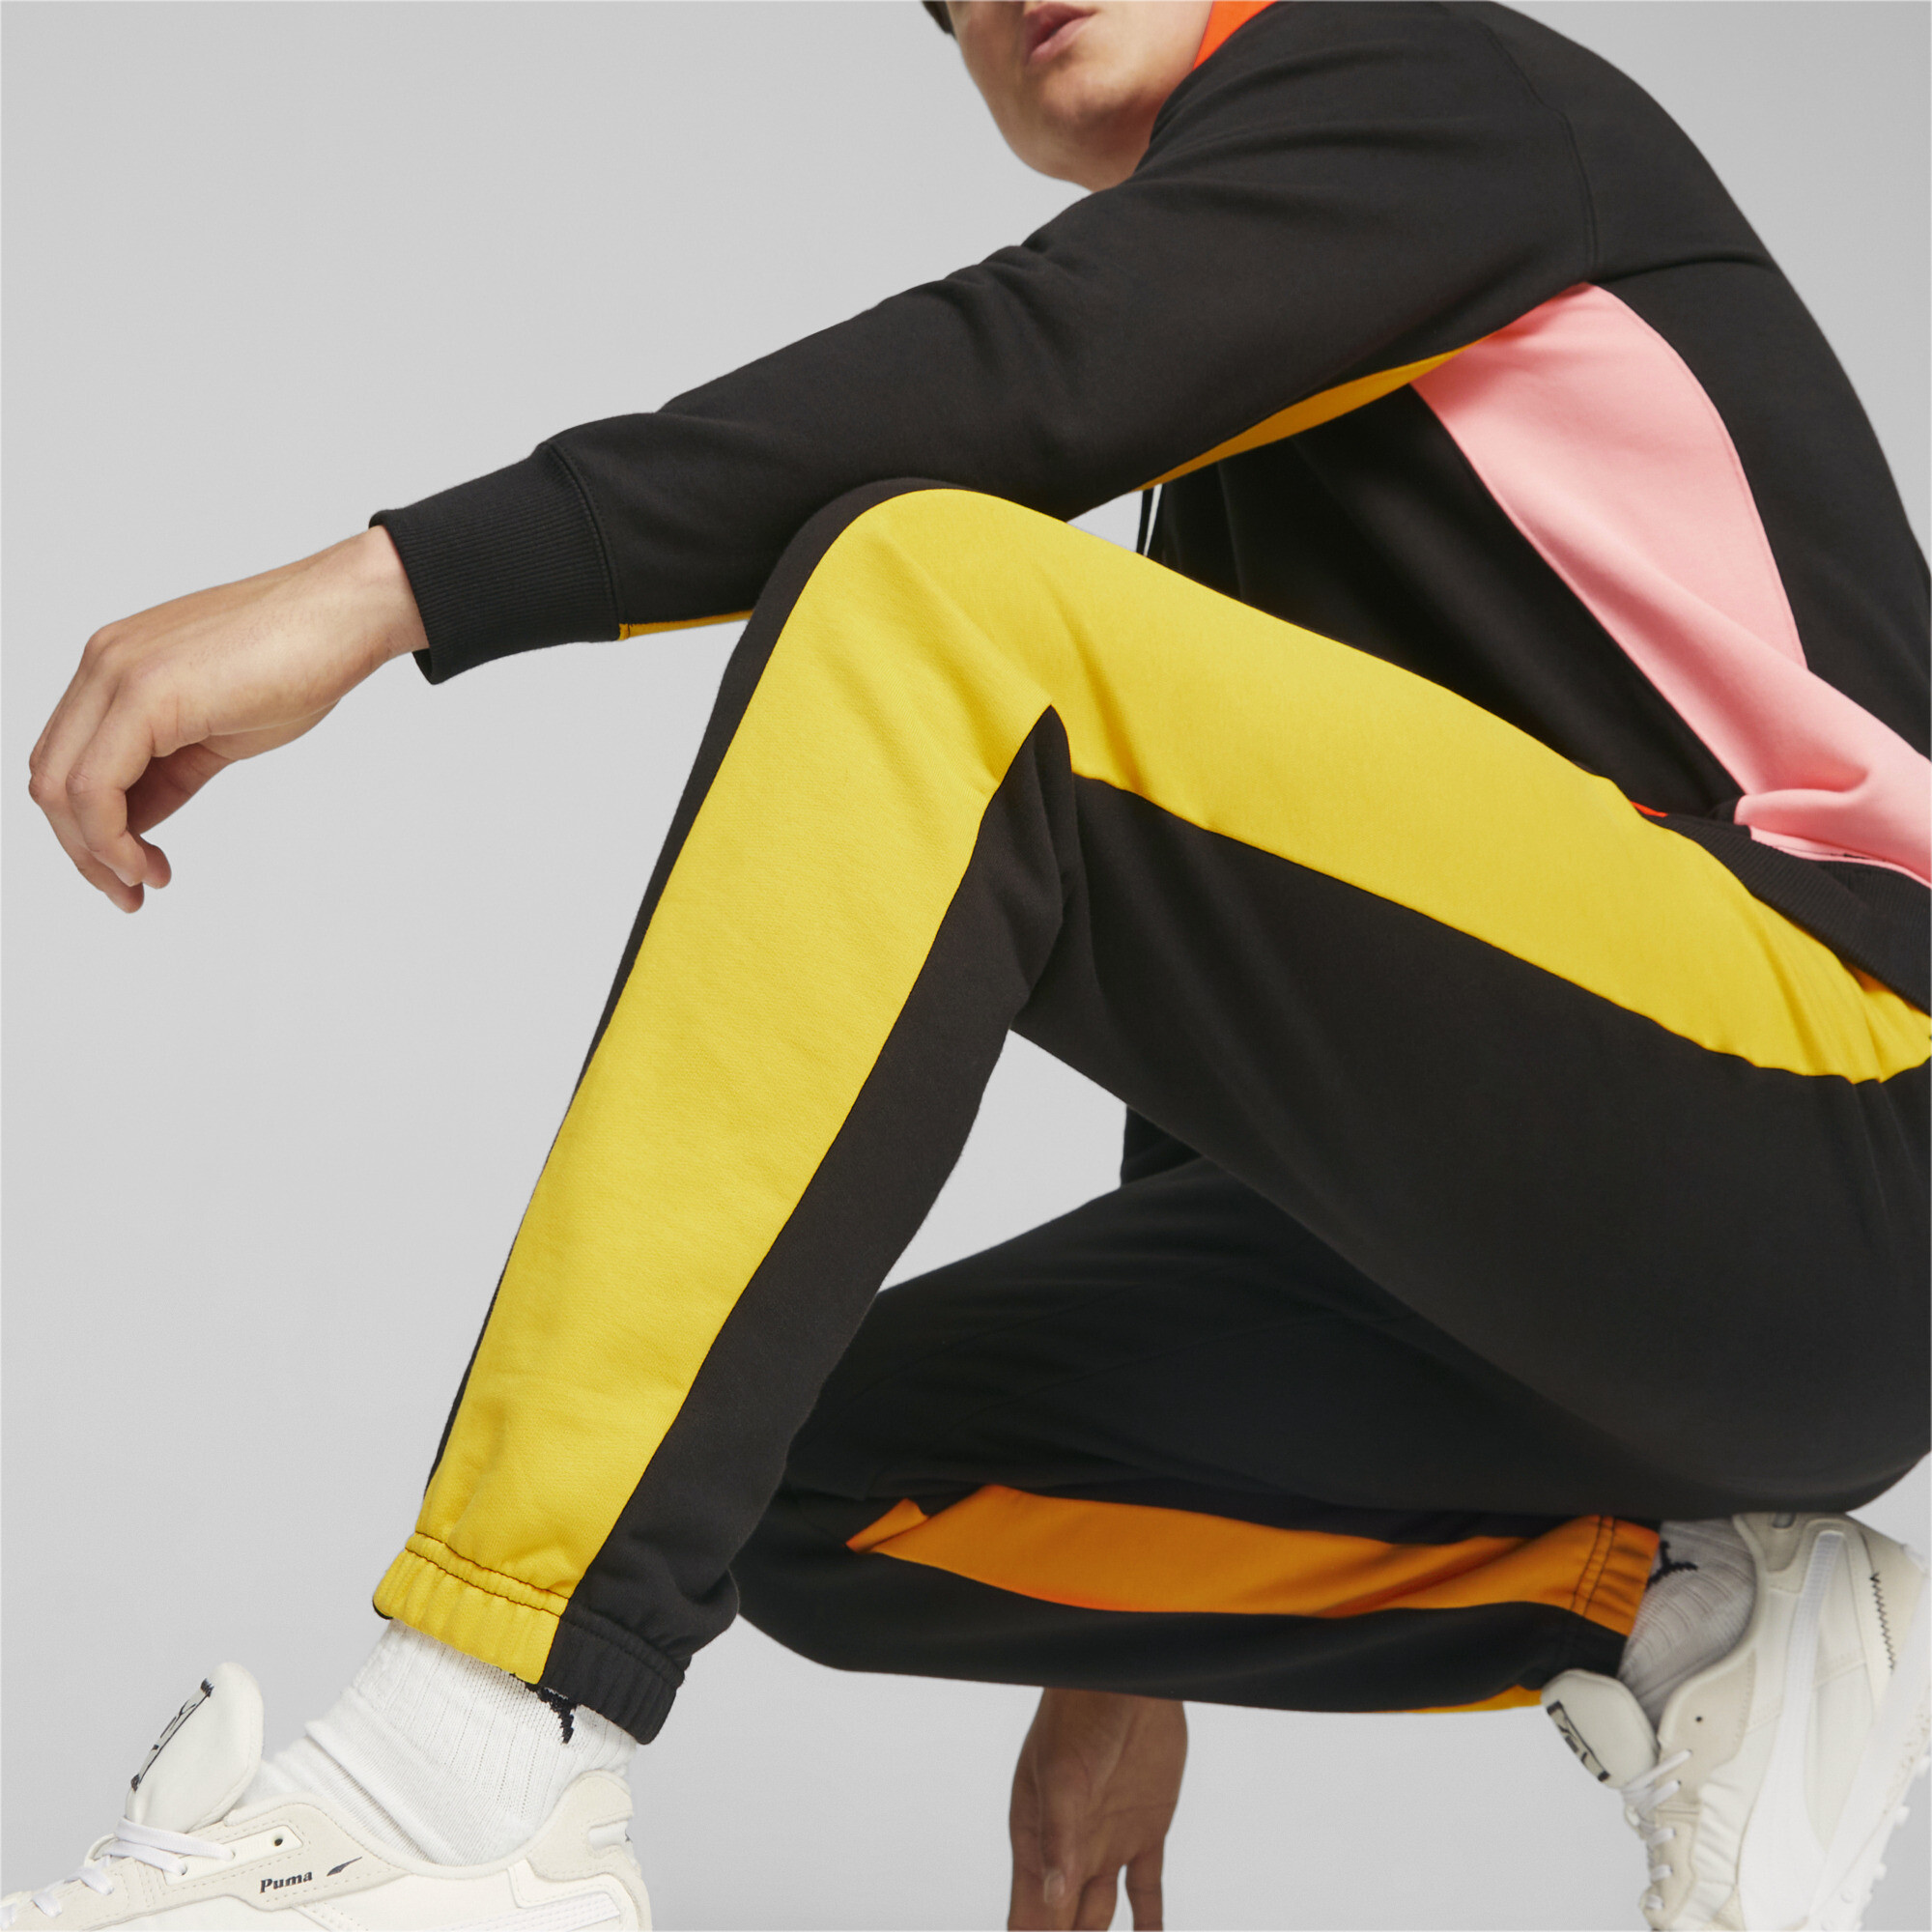 Men's Puma Classics Block's Sweatpants, Black, Size S, Clothing